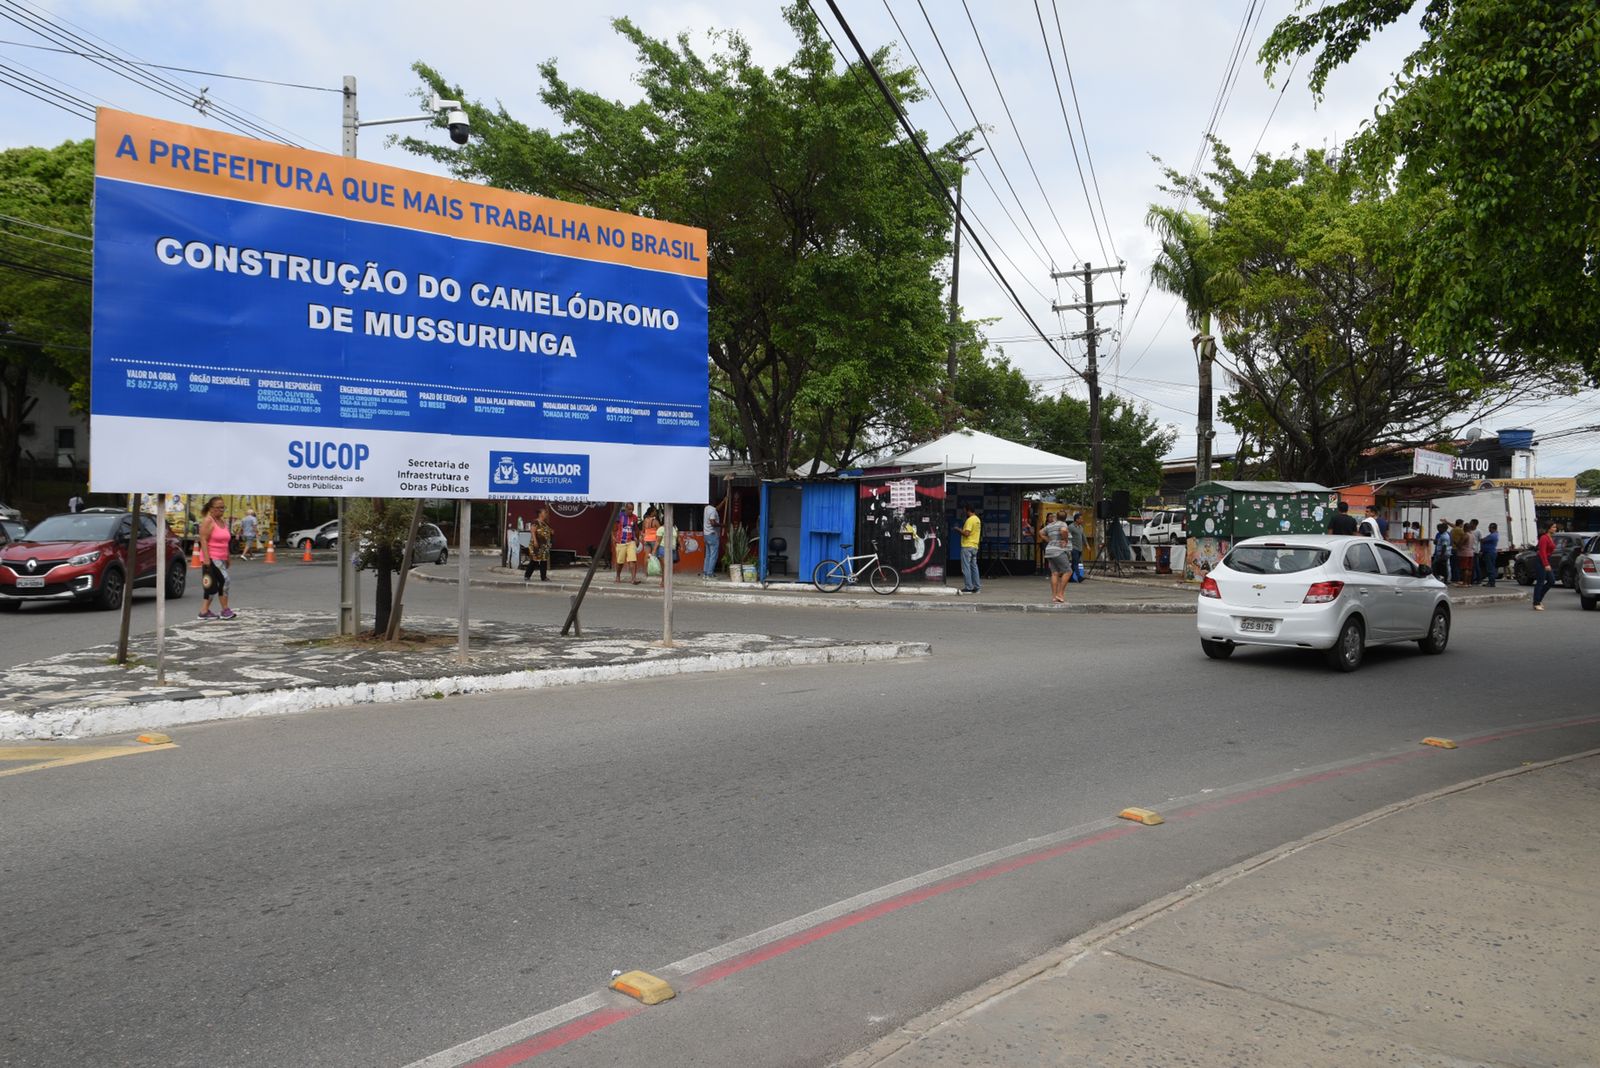 Prefeitura inicia construção de novo camelódromo em Mussurunga